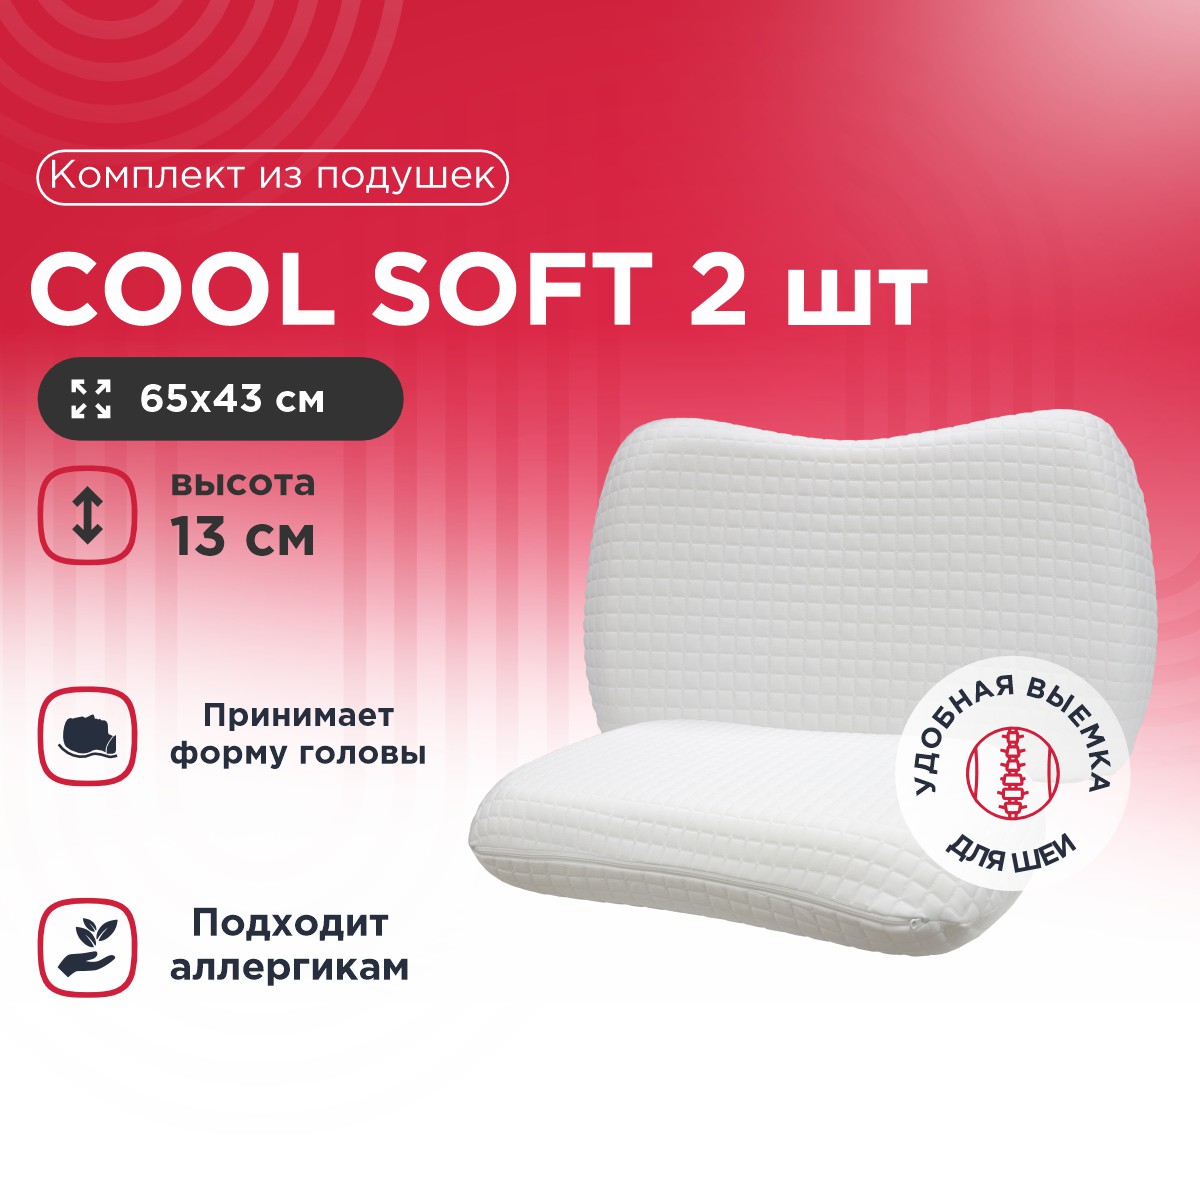 Комплект из подушек Cool Soft 2 шт